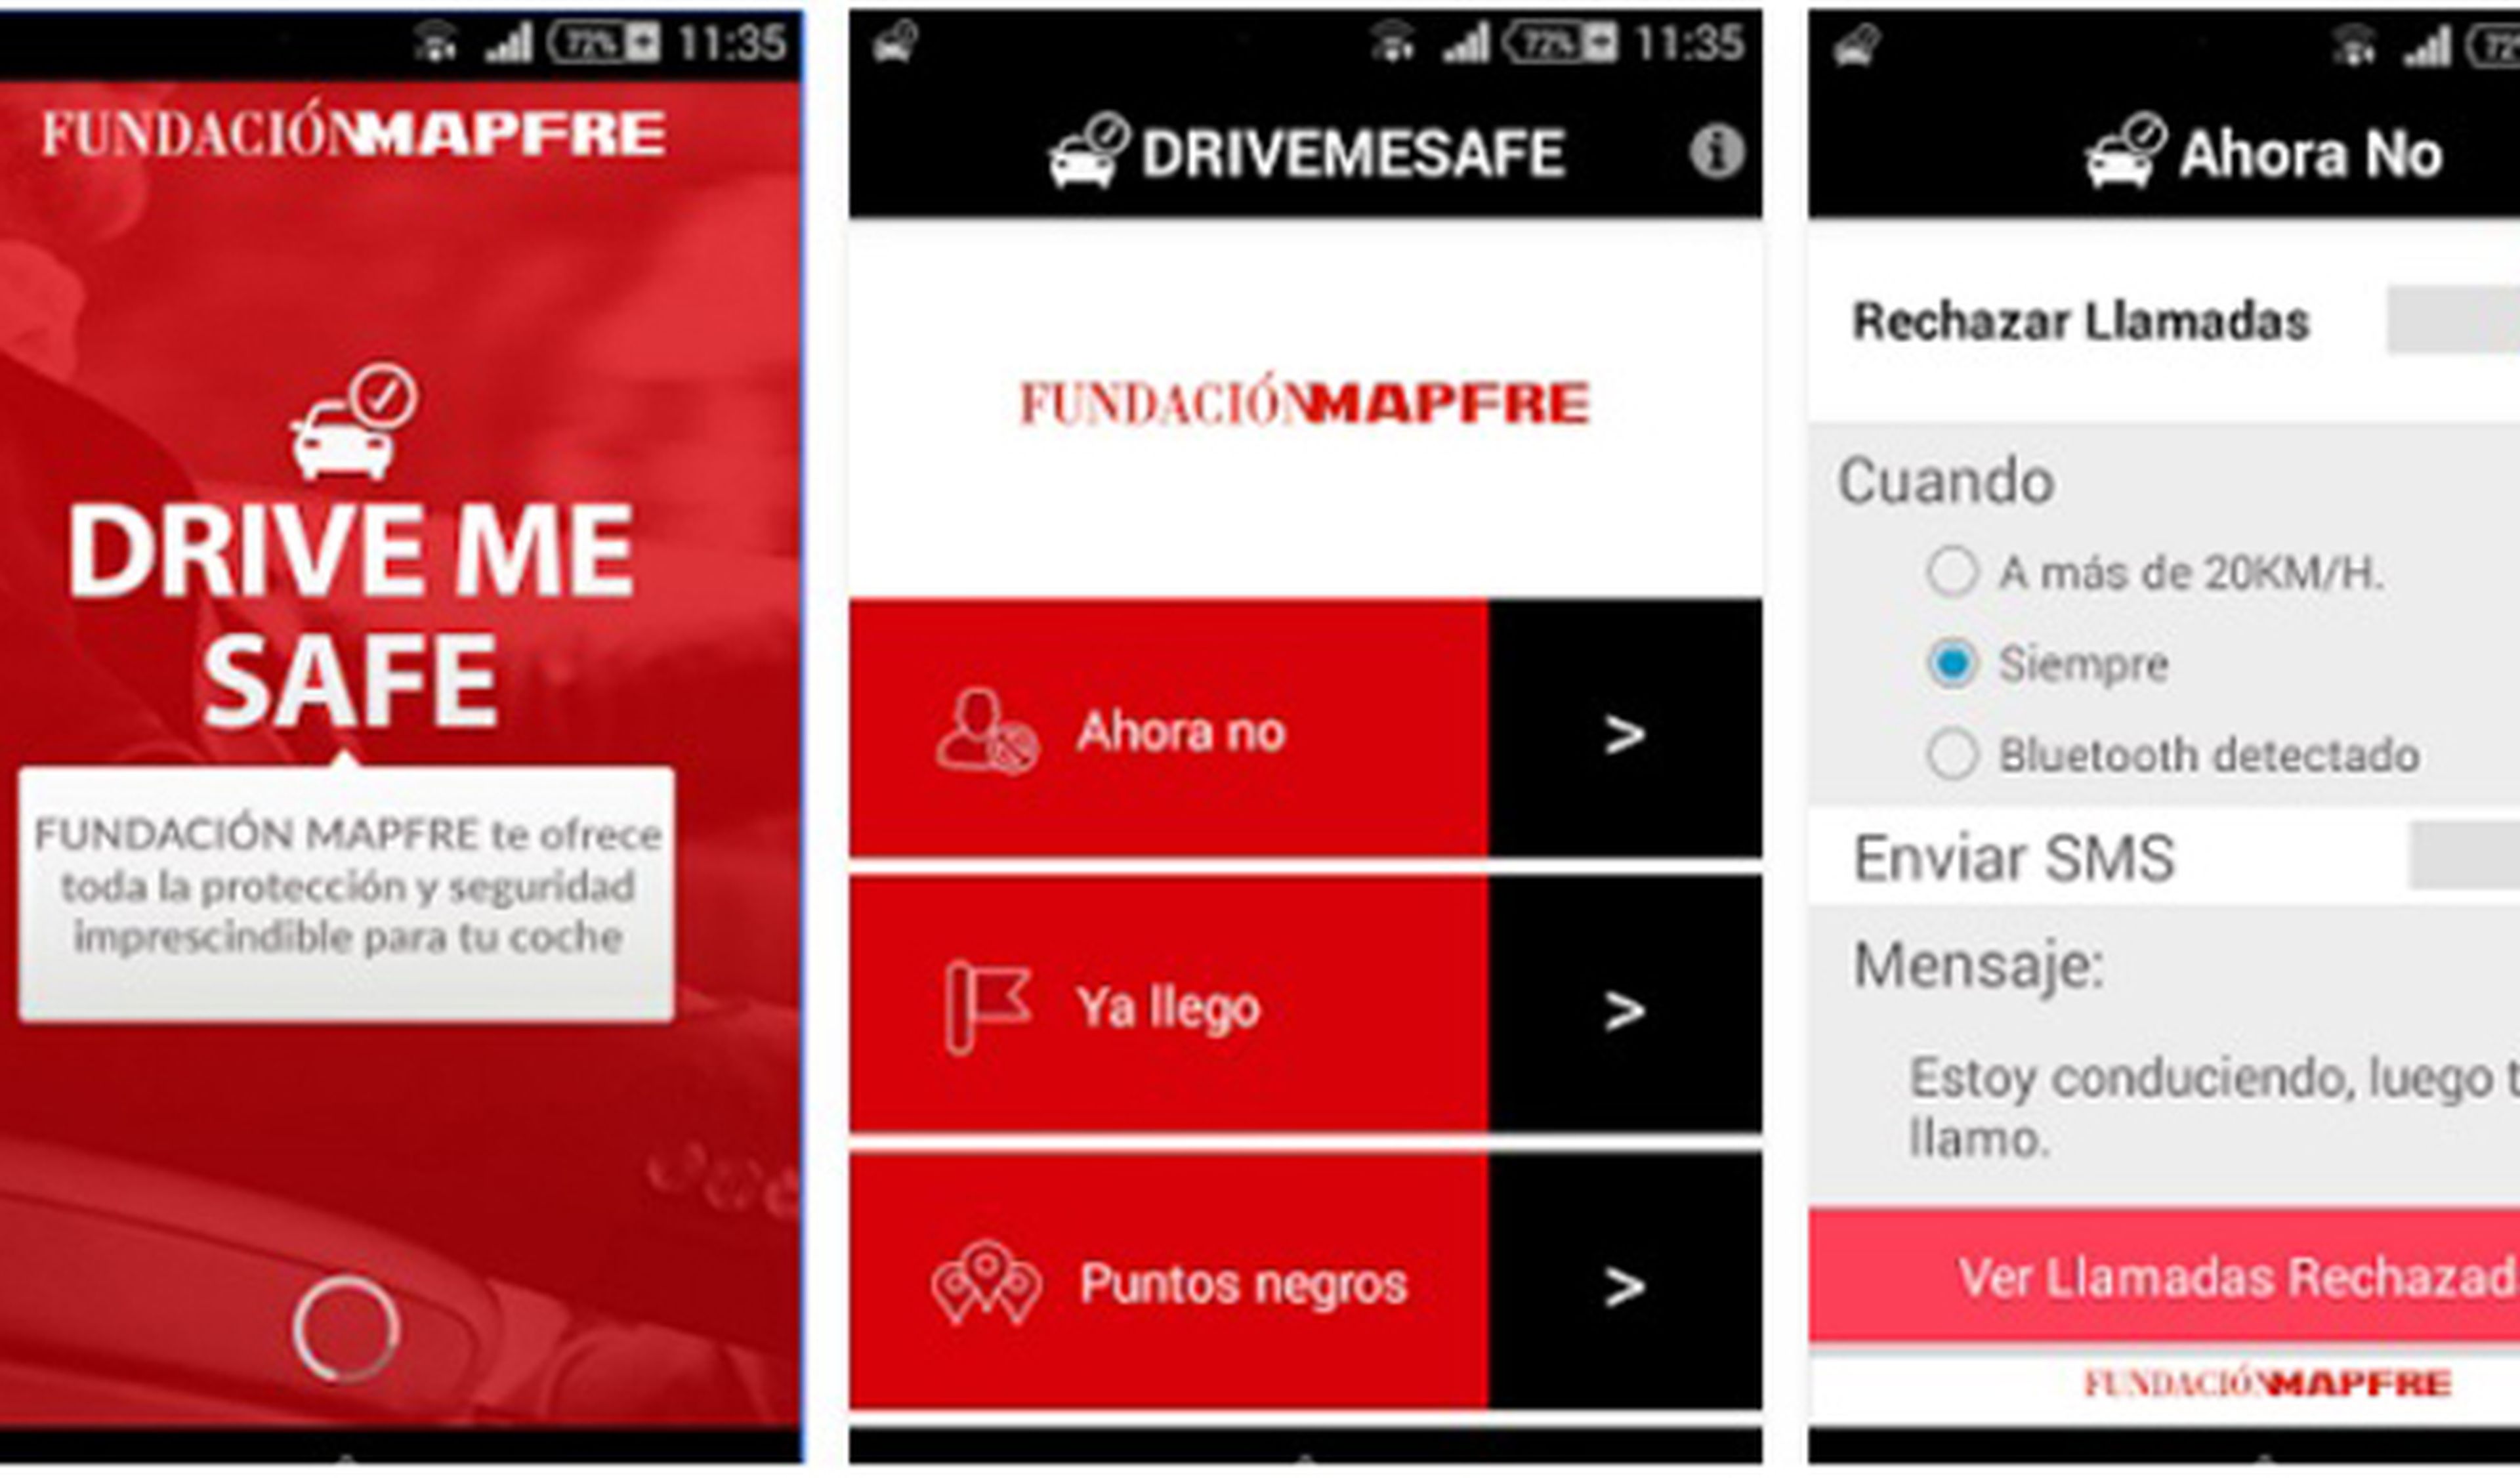 La app que rechaza llamadas al volante y dice 'Ya llego'